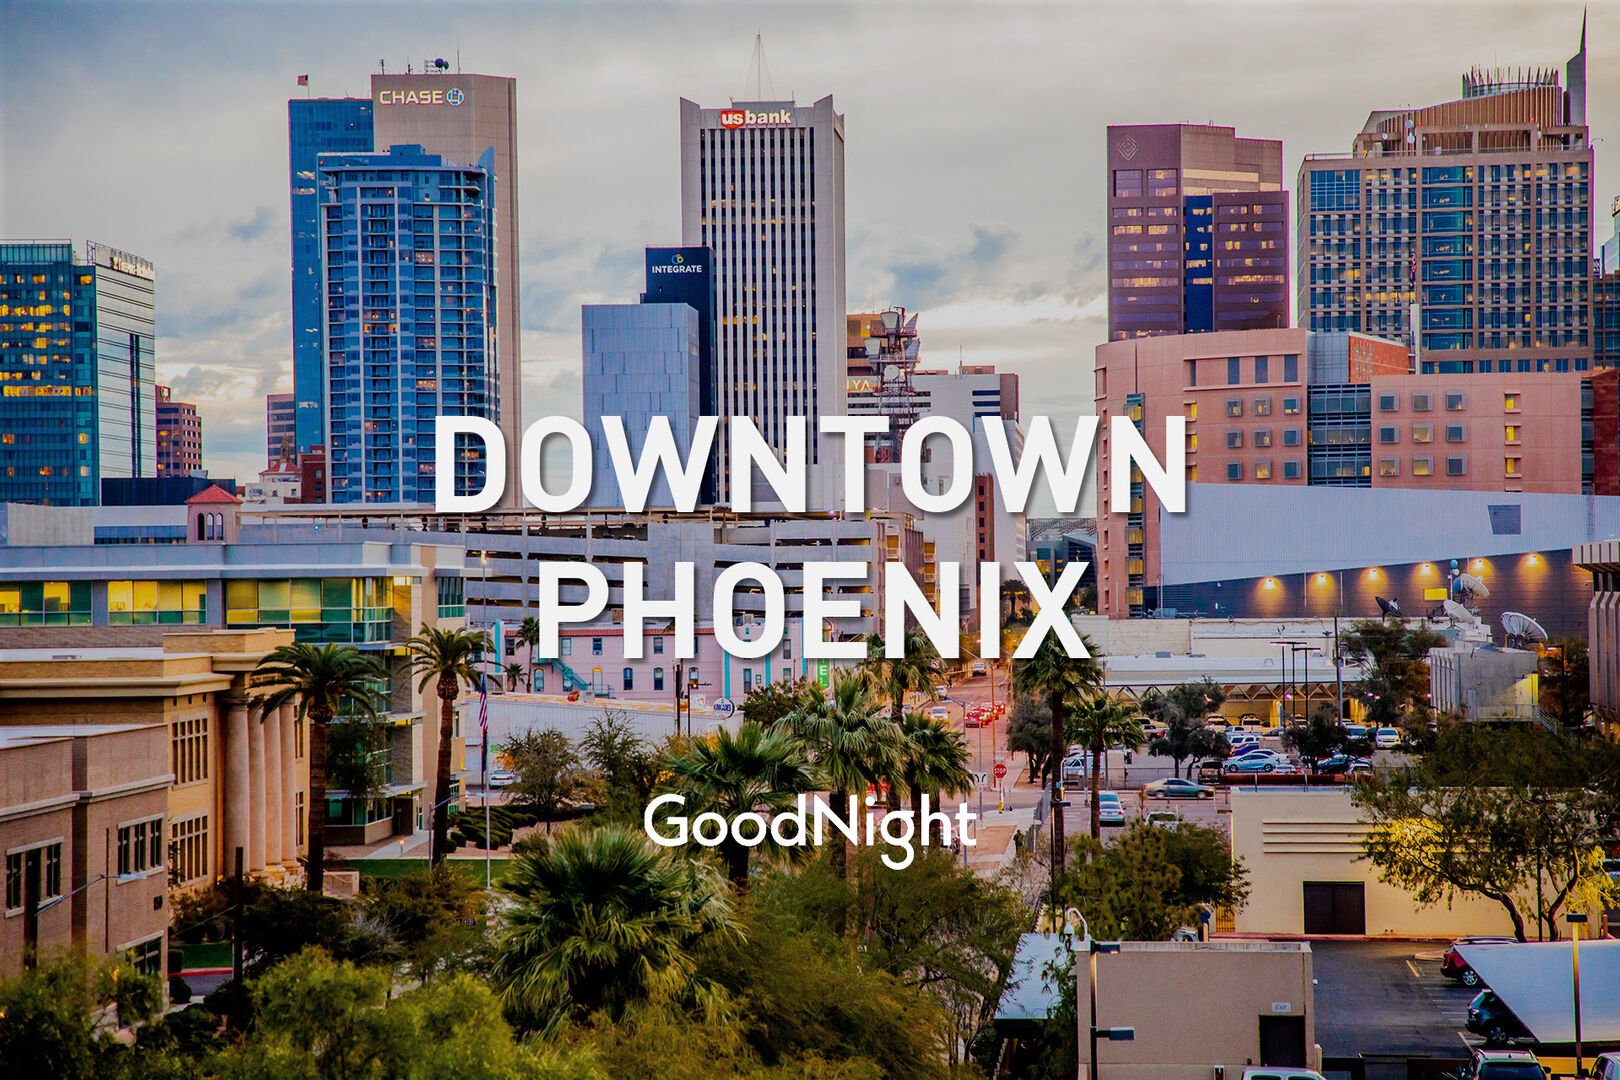 24 mins: Downtown Phoenix